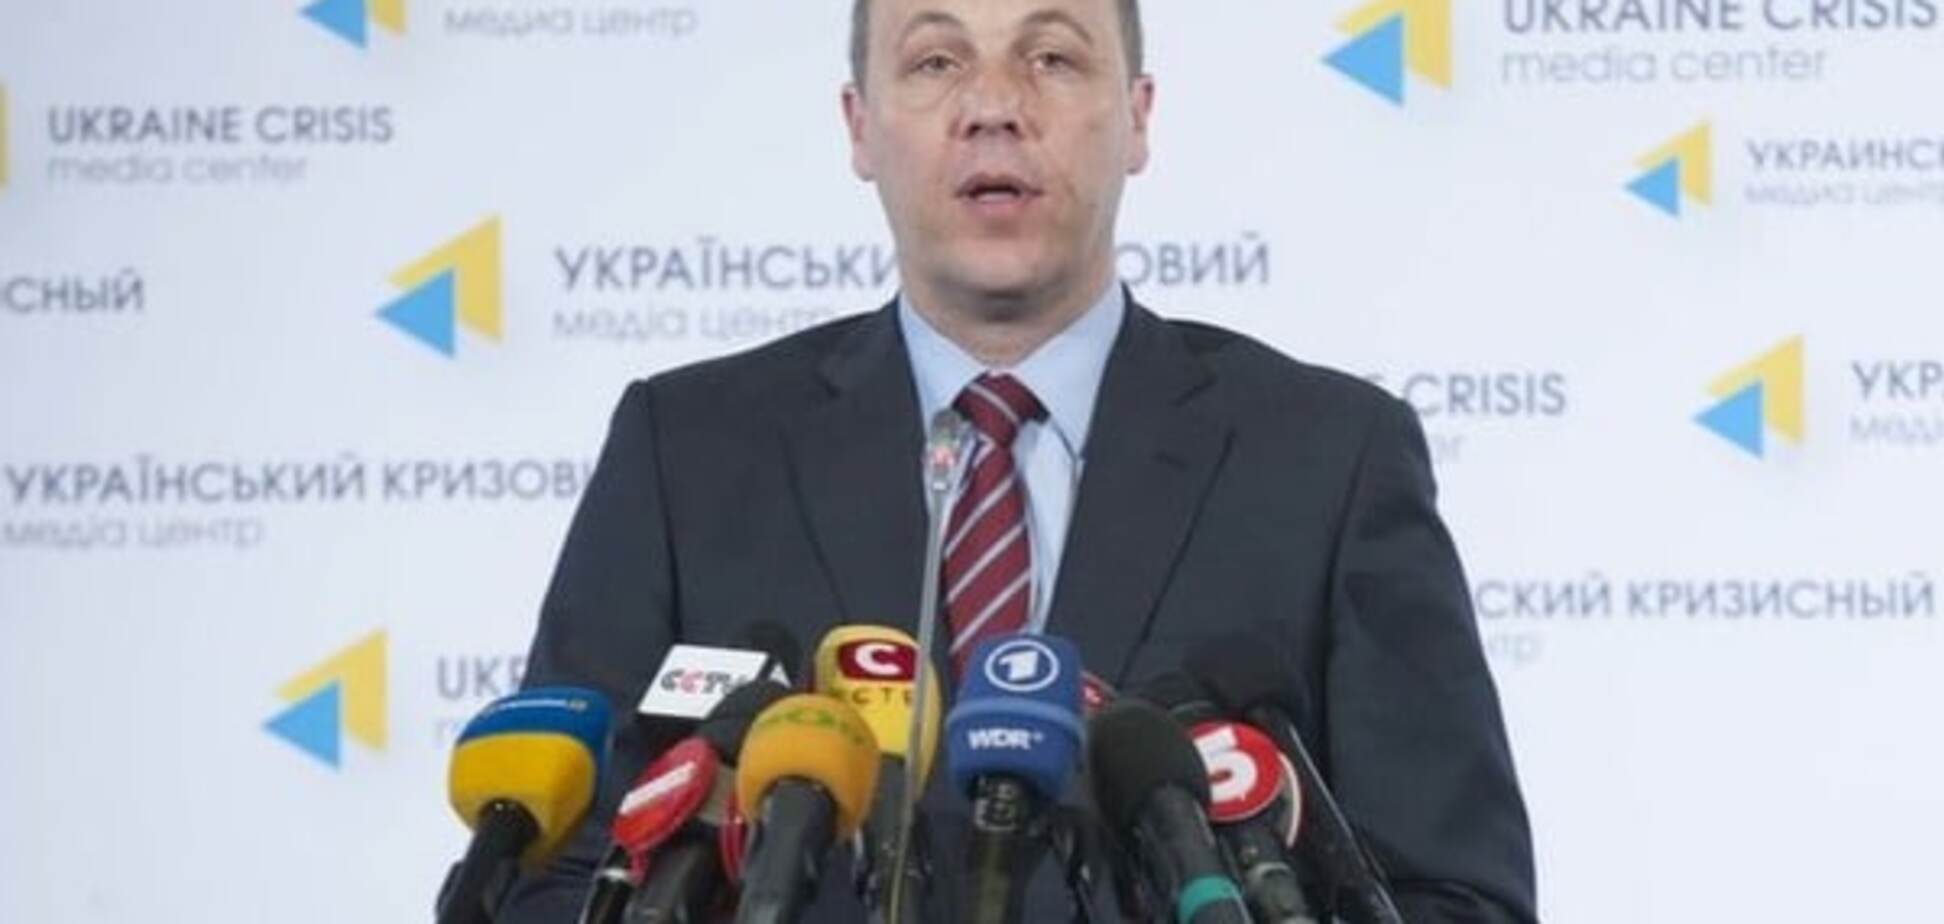 Скоро! Парубий назвал сроки, когда ЕС введет безвизовый режим с Украиной